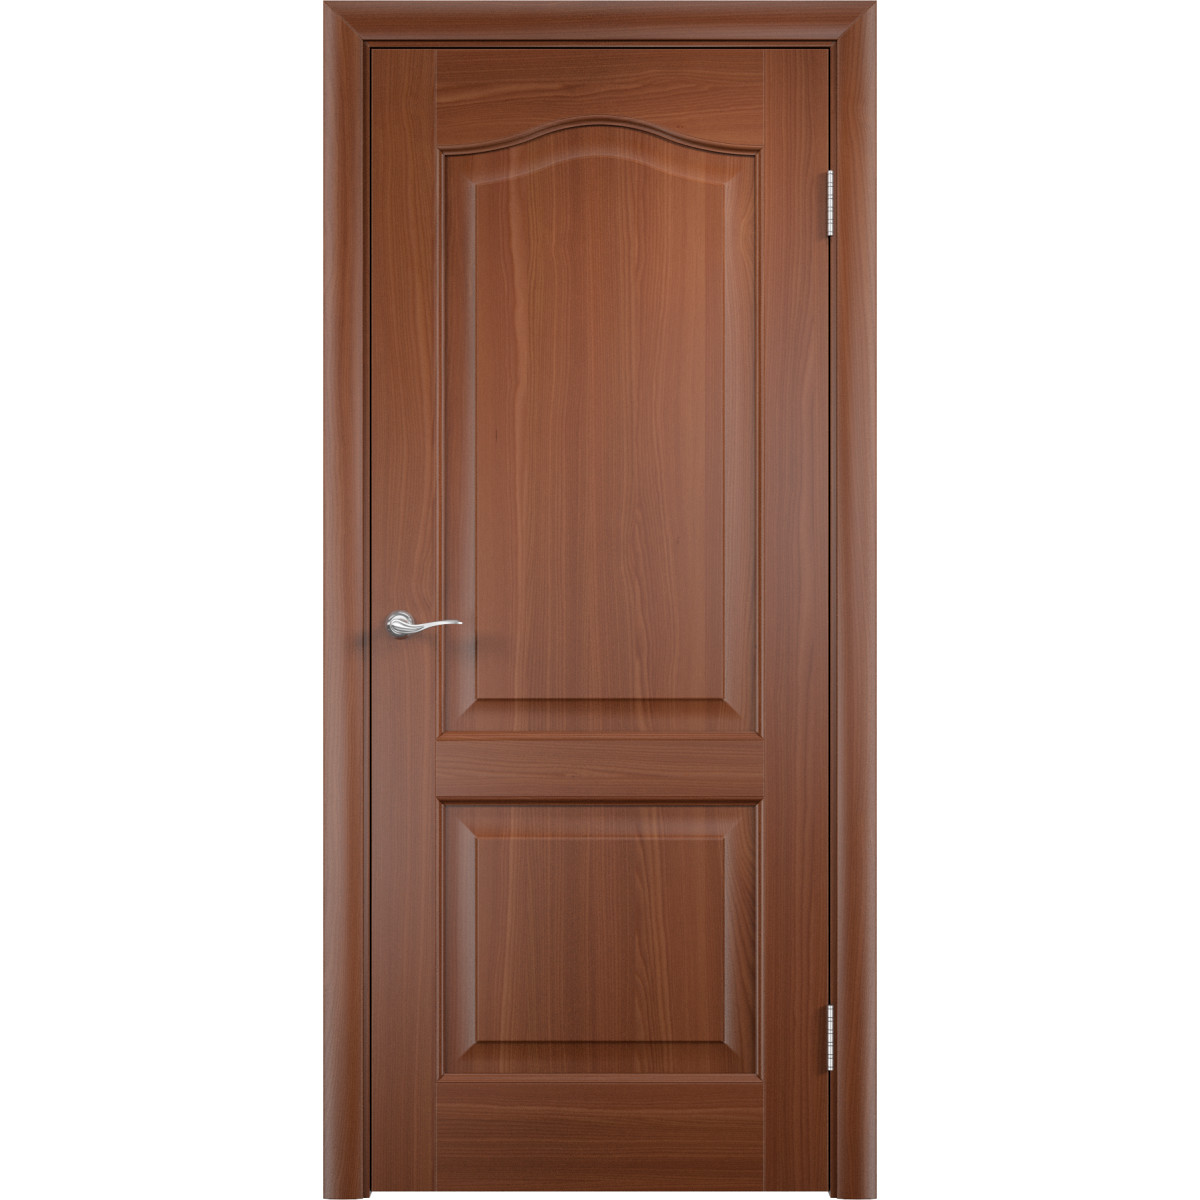 Дверь межкомнатная глухая ПВХ Антик 70x200 см цвет итальянский орех